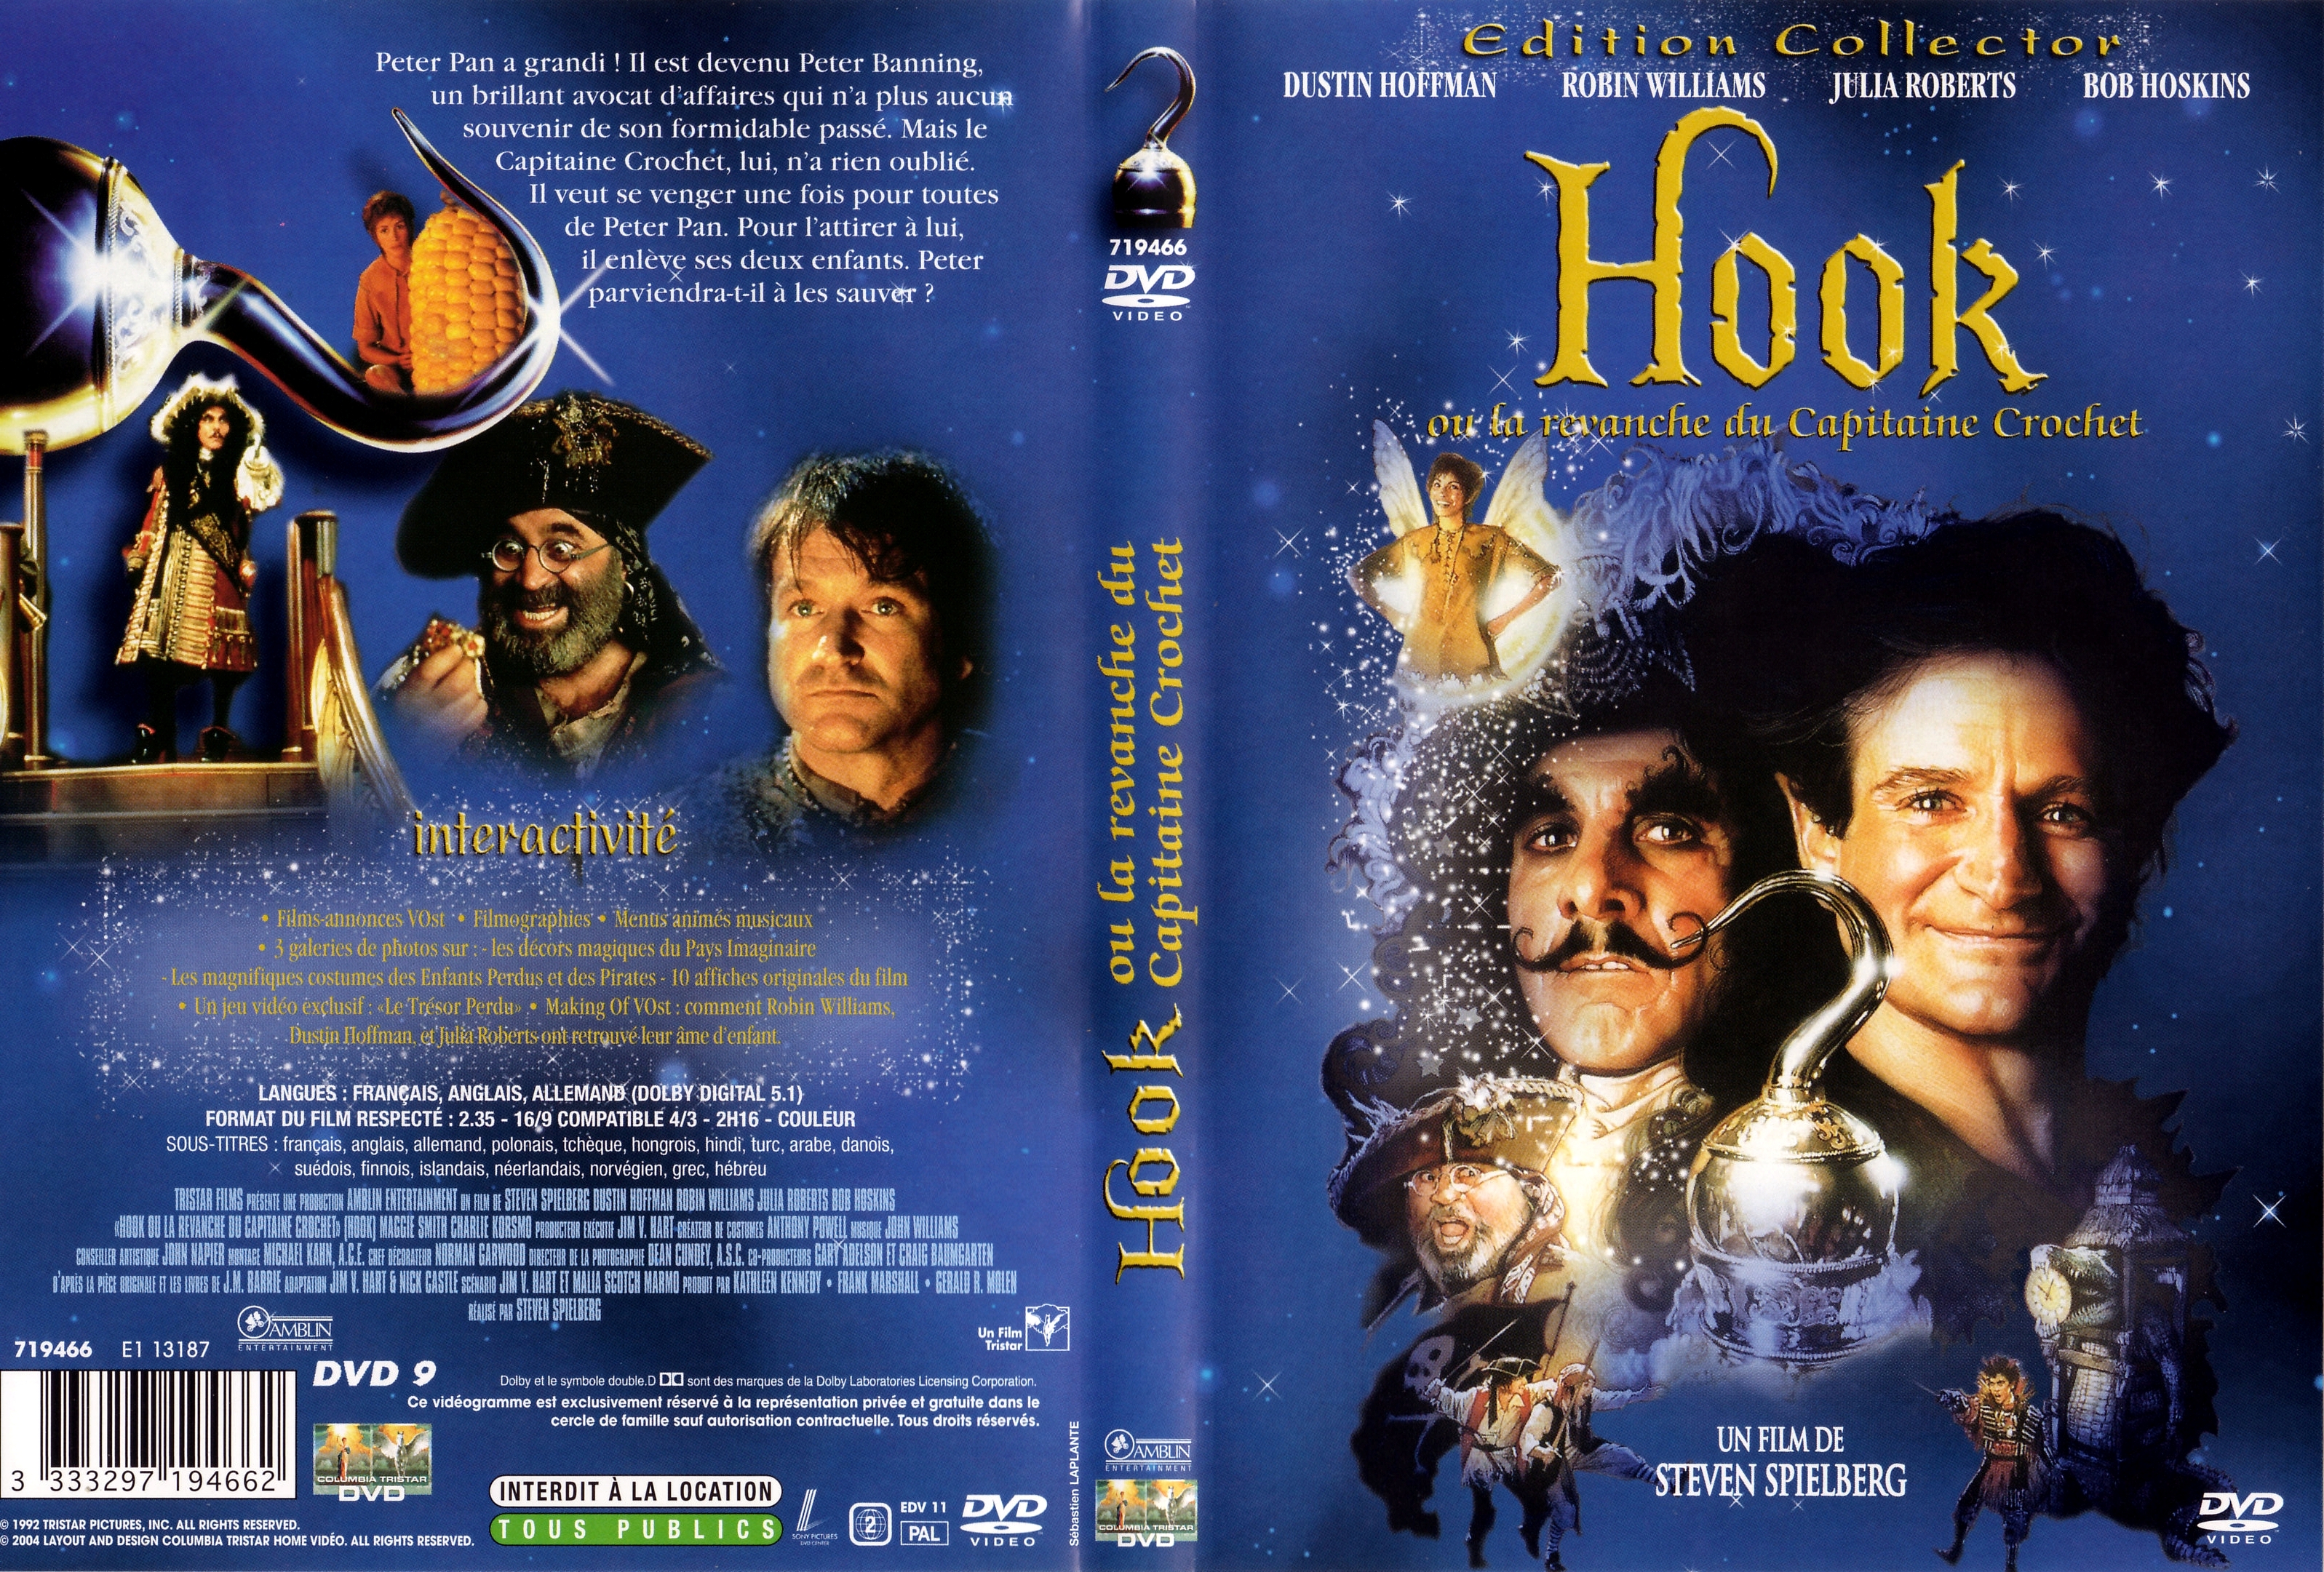 Jaquette DVD Hook v2